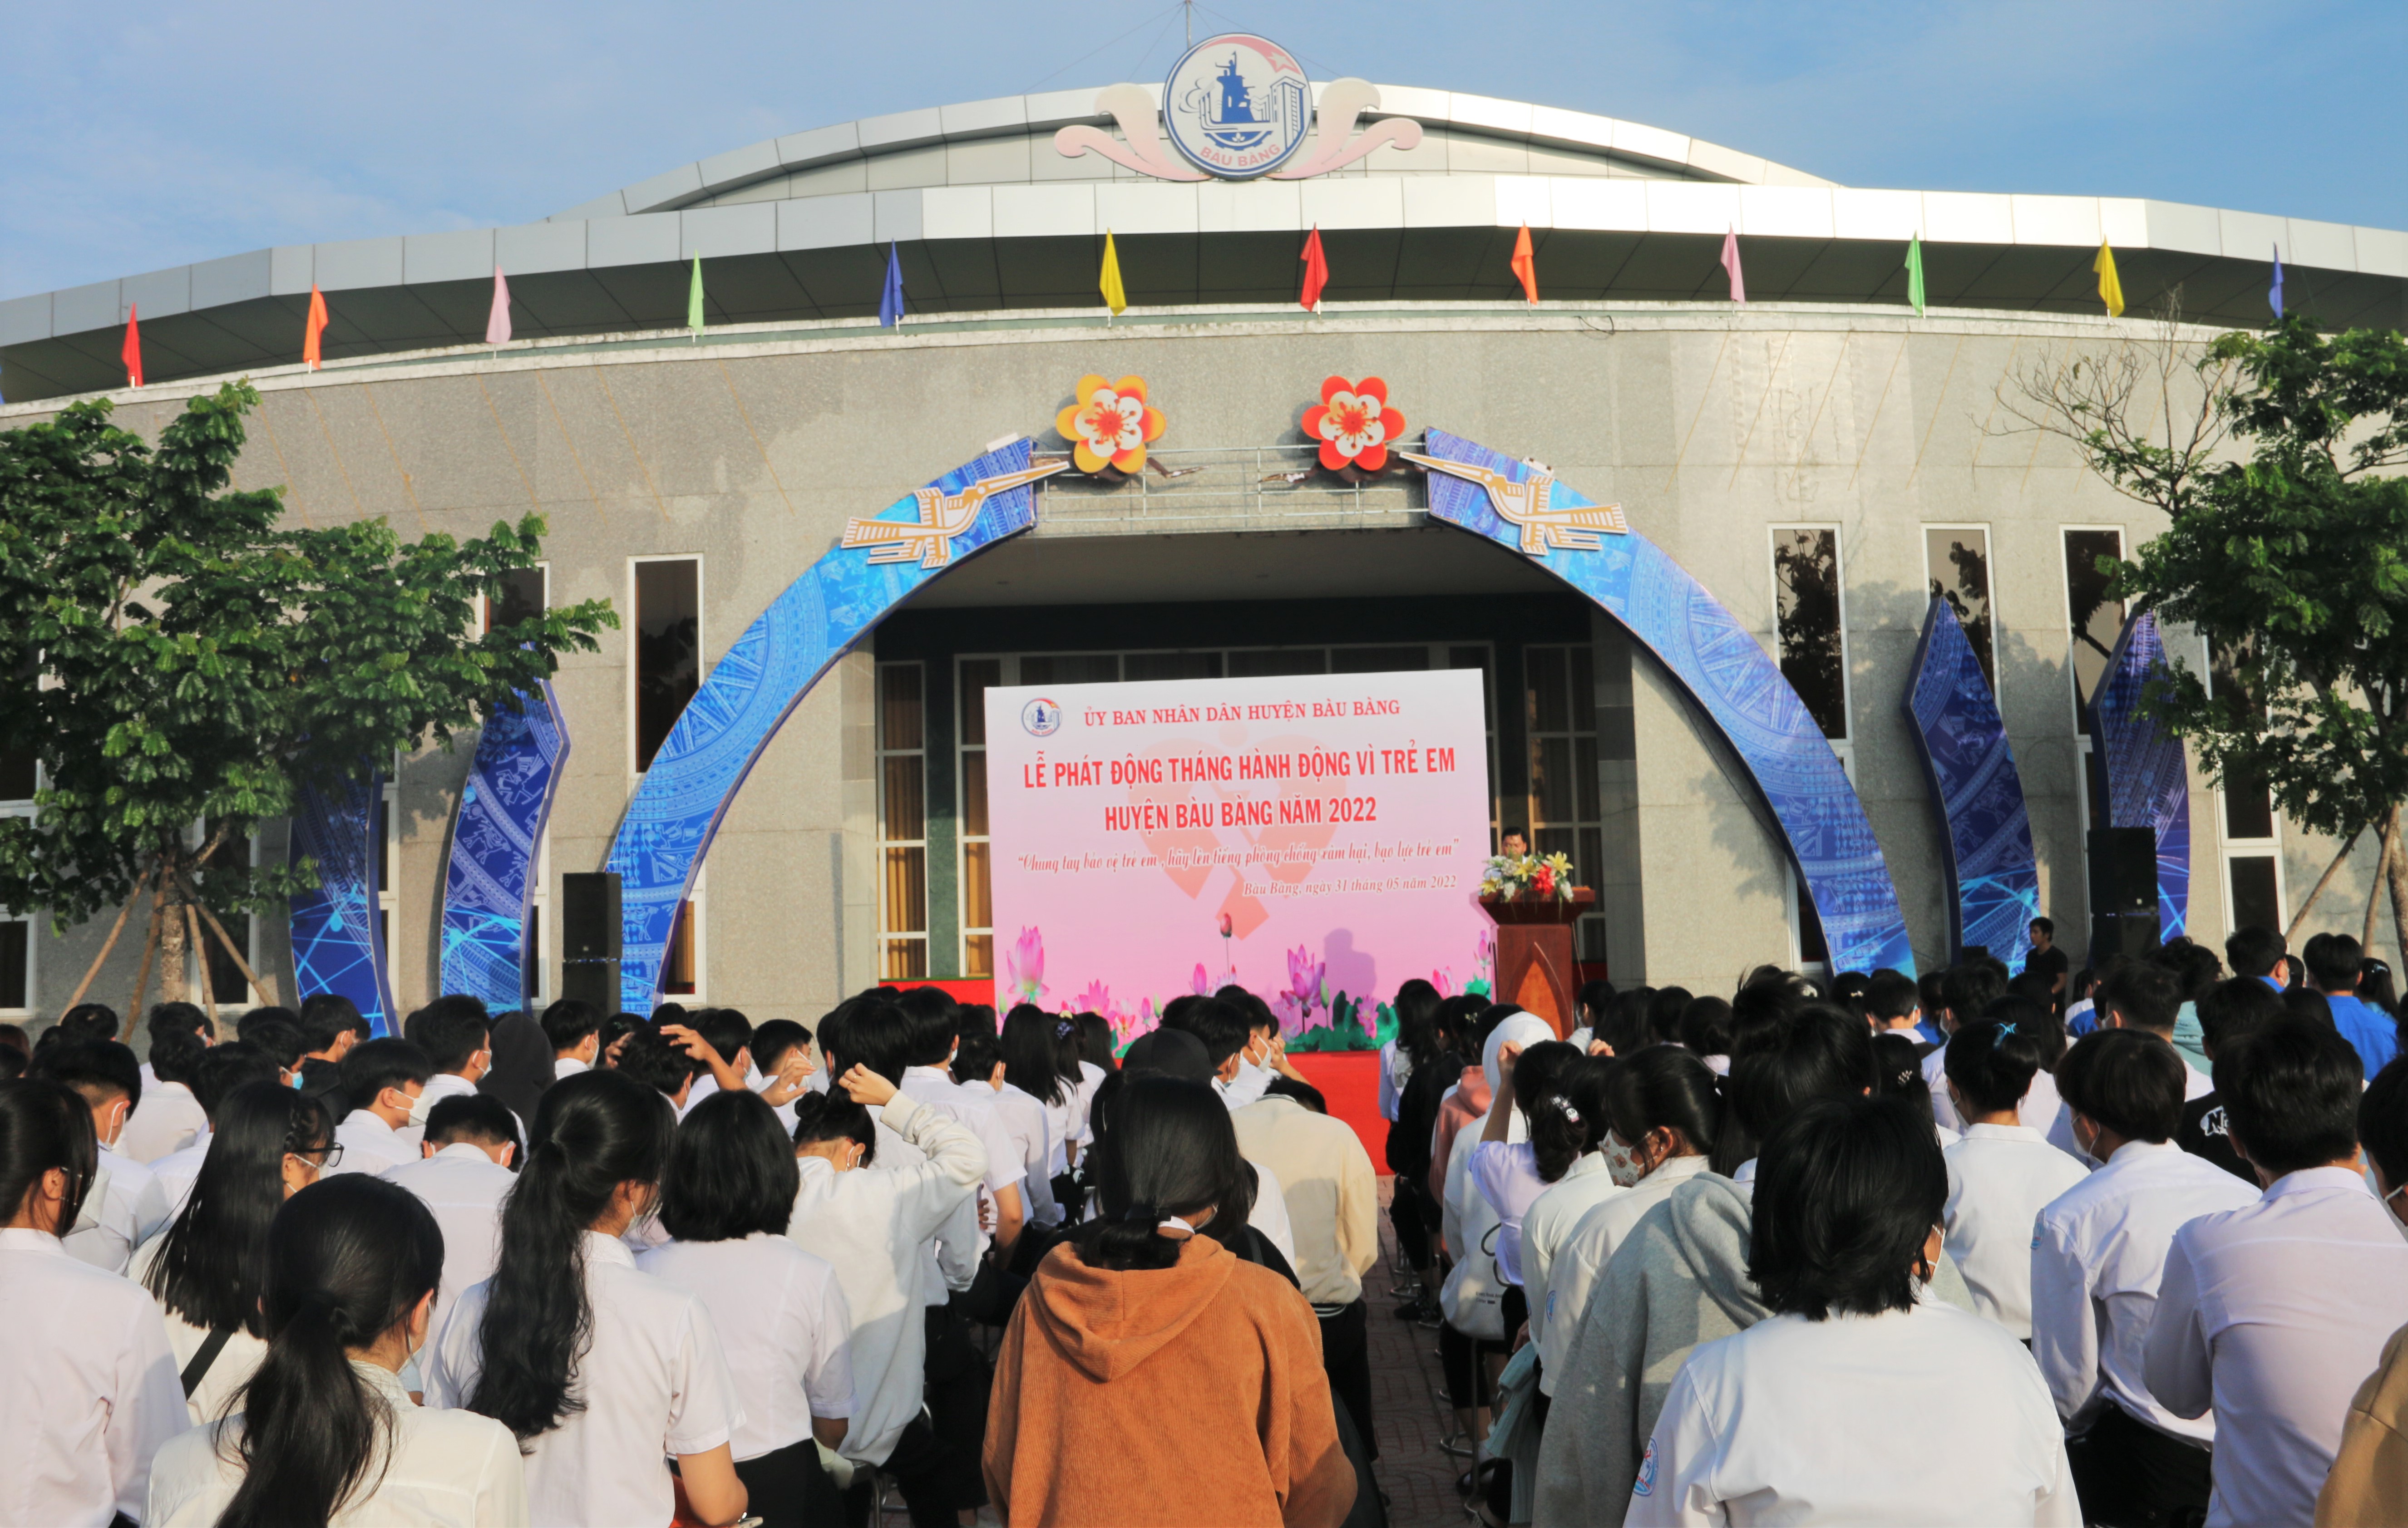 Bàu Bàng phát động tháng hành động Vì trẻ em huyện Bàu Bàng năm 2022